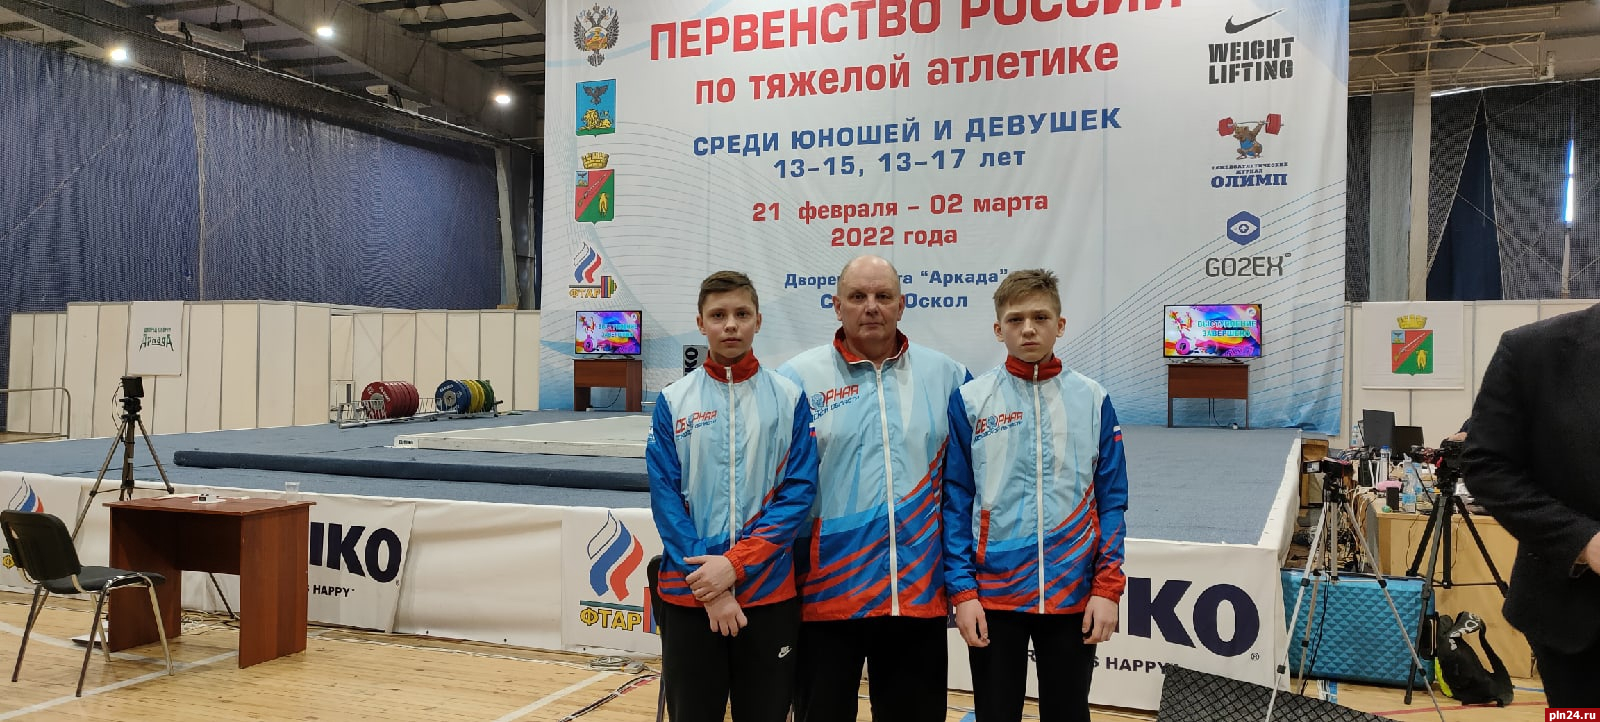 Псковские тяжелоатлеты выступили на первенстве России